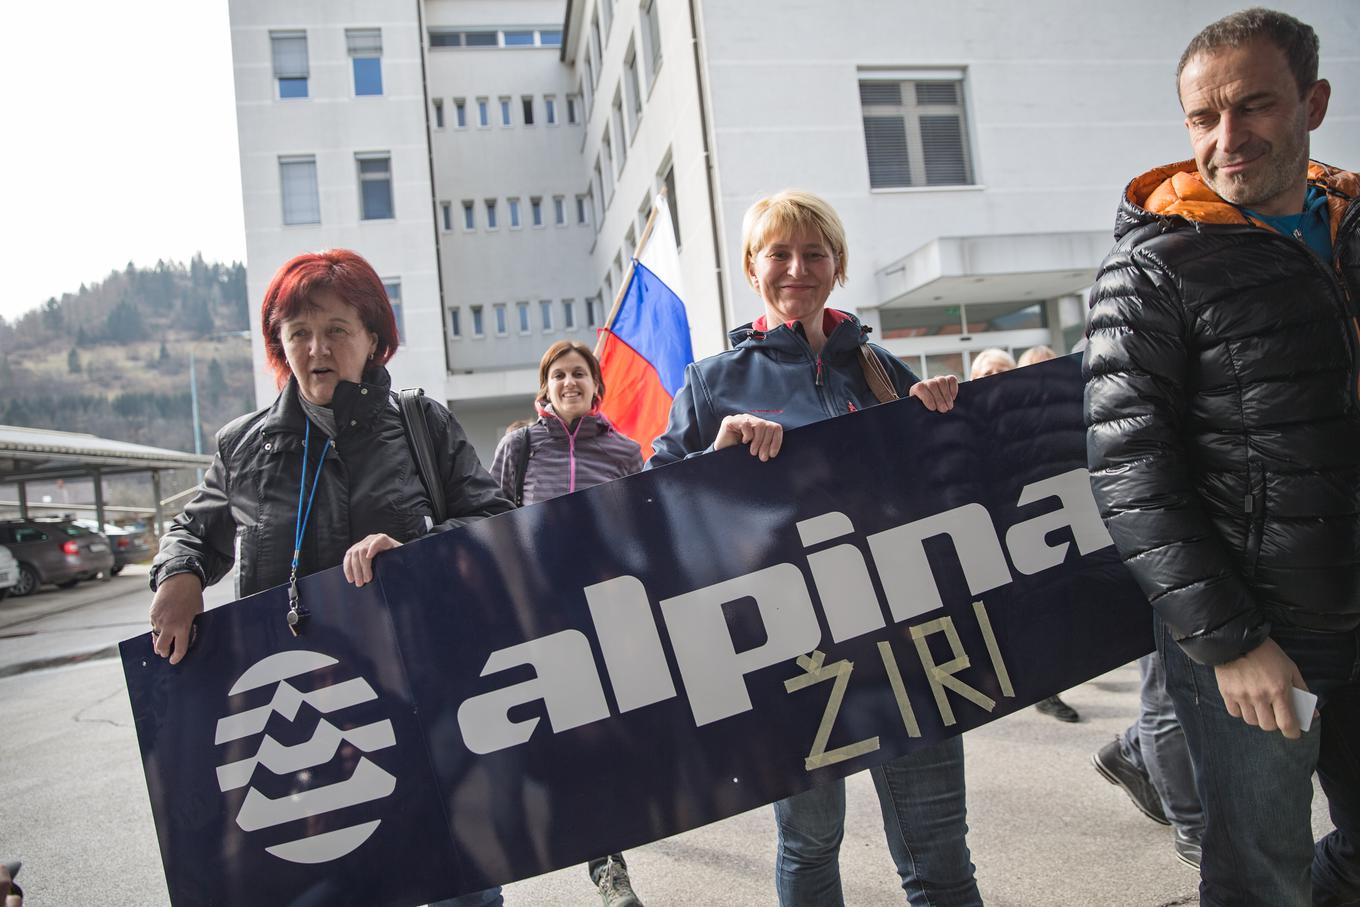 Warum musste Alpina, das in den letzten drei Monaten einen Verlust von einer halben Million Euro erwirtschaftete und in diesem Jahr allein in Slowenien 55 Mitarbeiter entlassen wollte, teures Geld zahlen, um Berater mit fragwürdiger Wirkung einzustellen?  |  Foto: Bor Slana